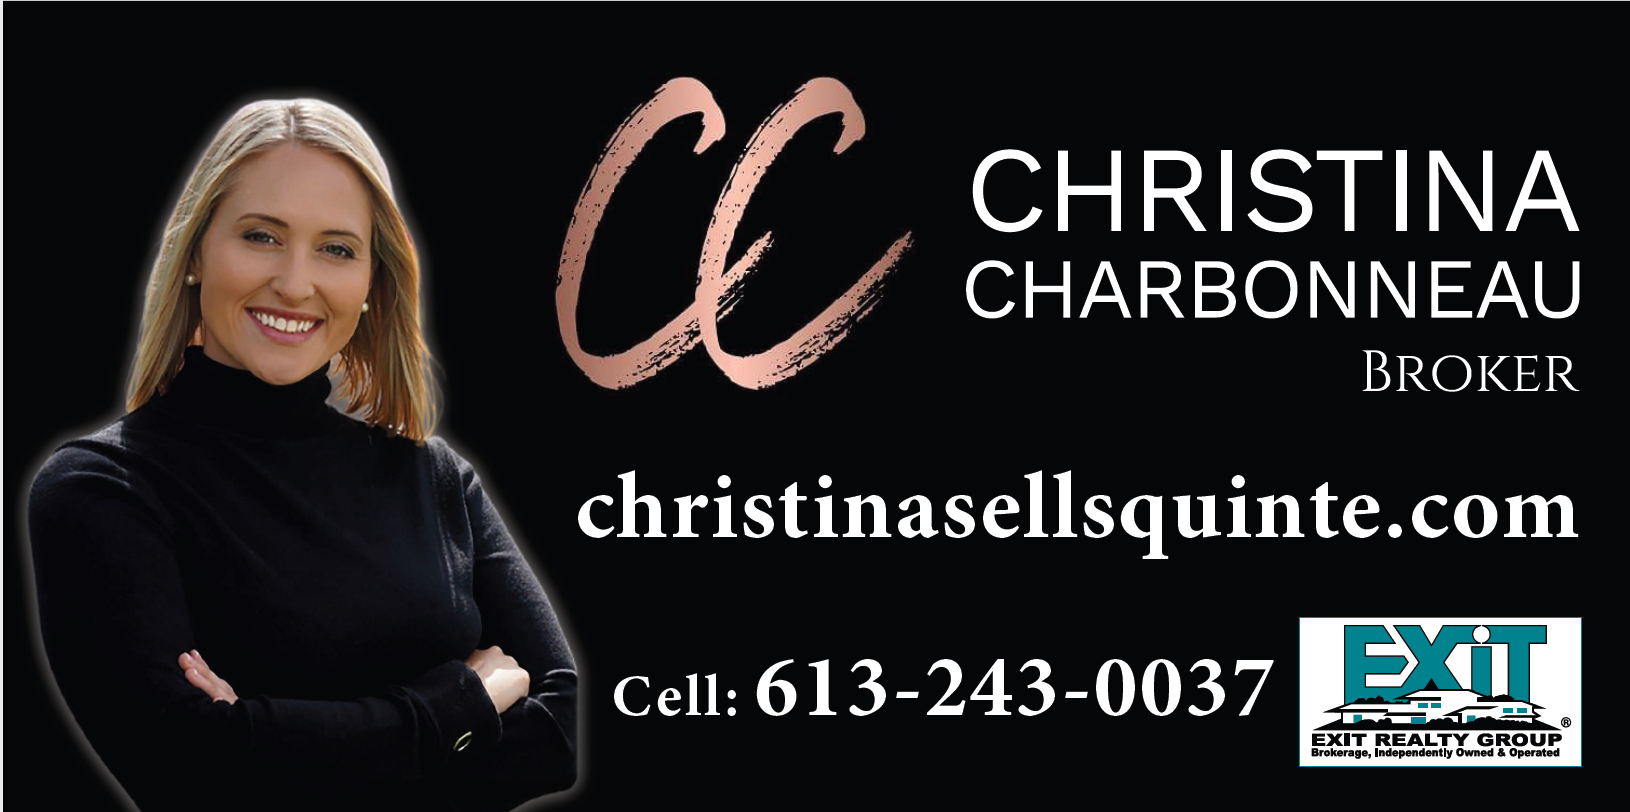 Christine Charbonneau - Exit Realty